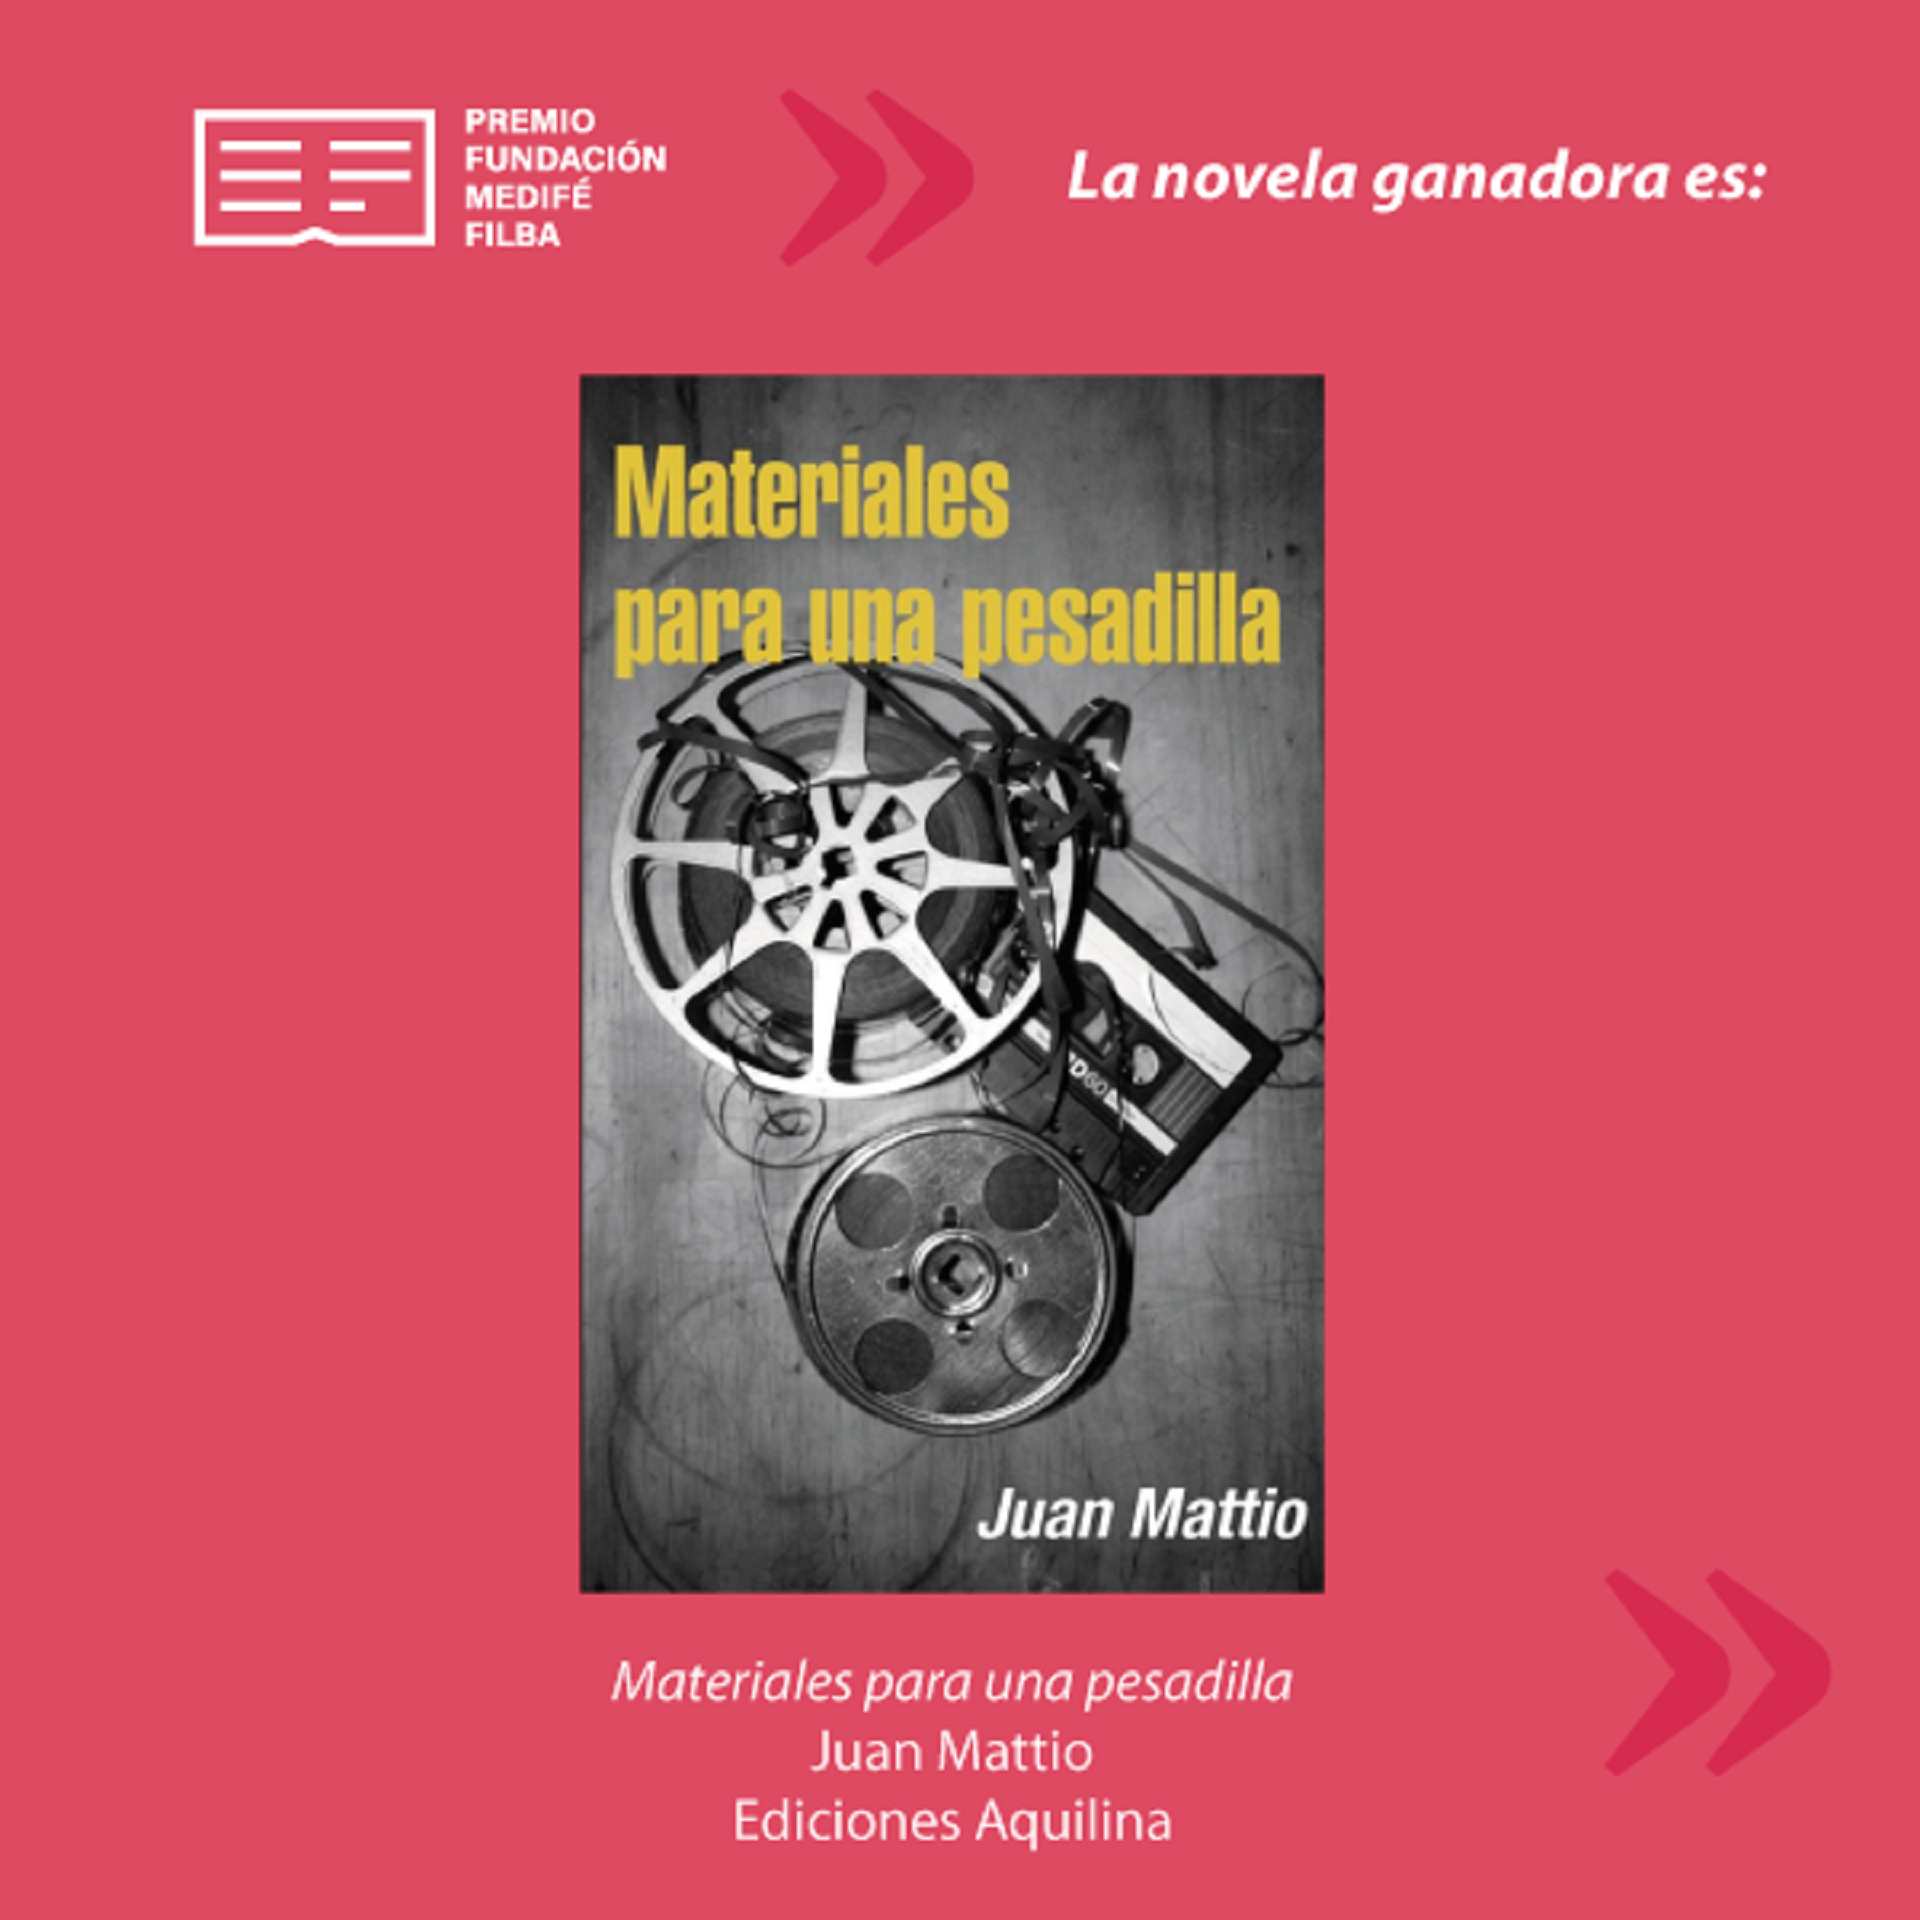 "Materiales para una pesadilla", de Juan Mattio, novela ganadora del Premio Fundación Medifé Filba